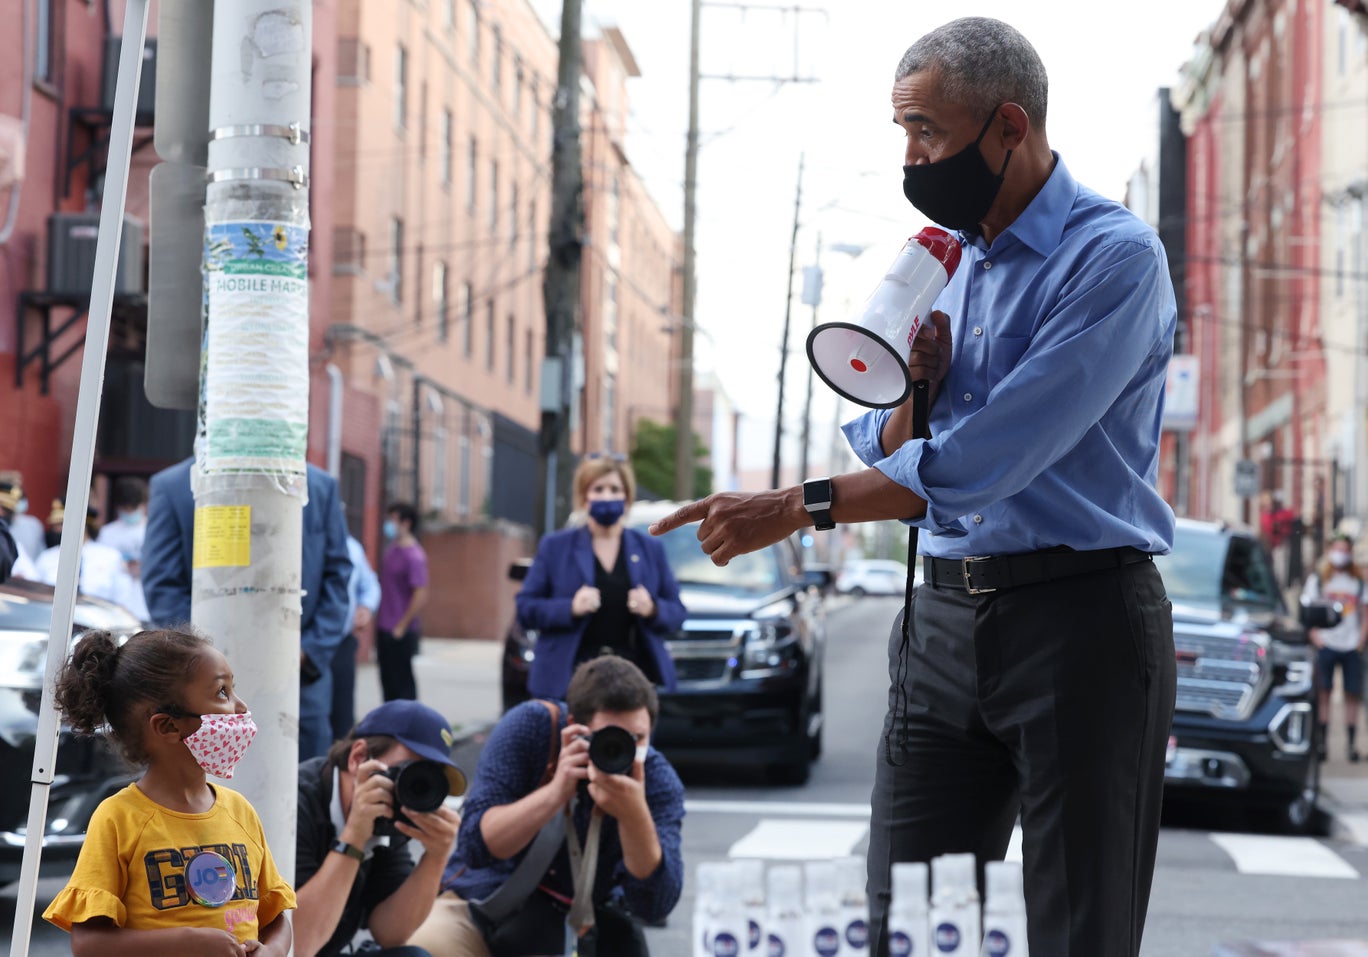  الرئيس الأميركي السابق باراك أوباما يتحدث إلى طفل صغير أثناء حملته الانتخابية لمساندة جو بايدن في فيلاديلفيا بولاية بنسلفانيا (مايكل م. سانتياغو- غيتي)